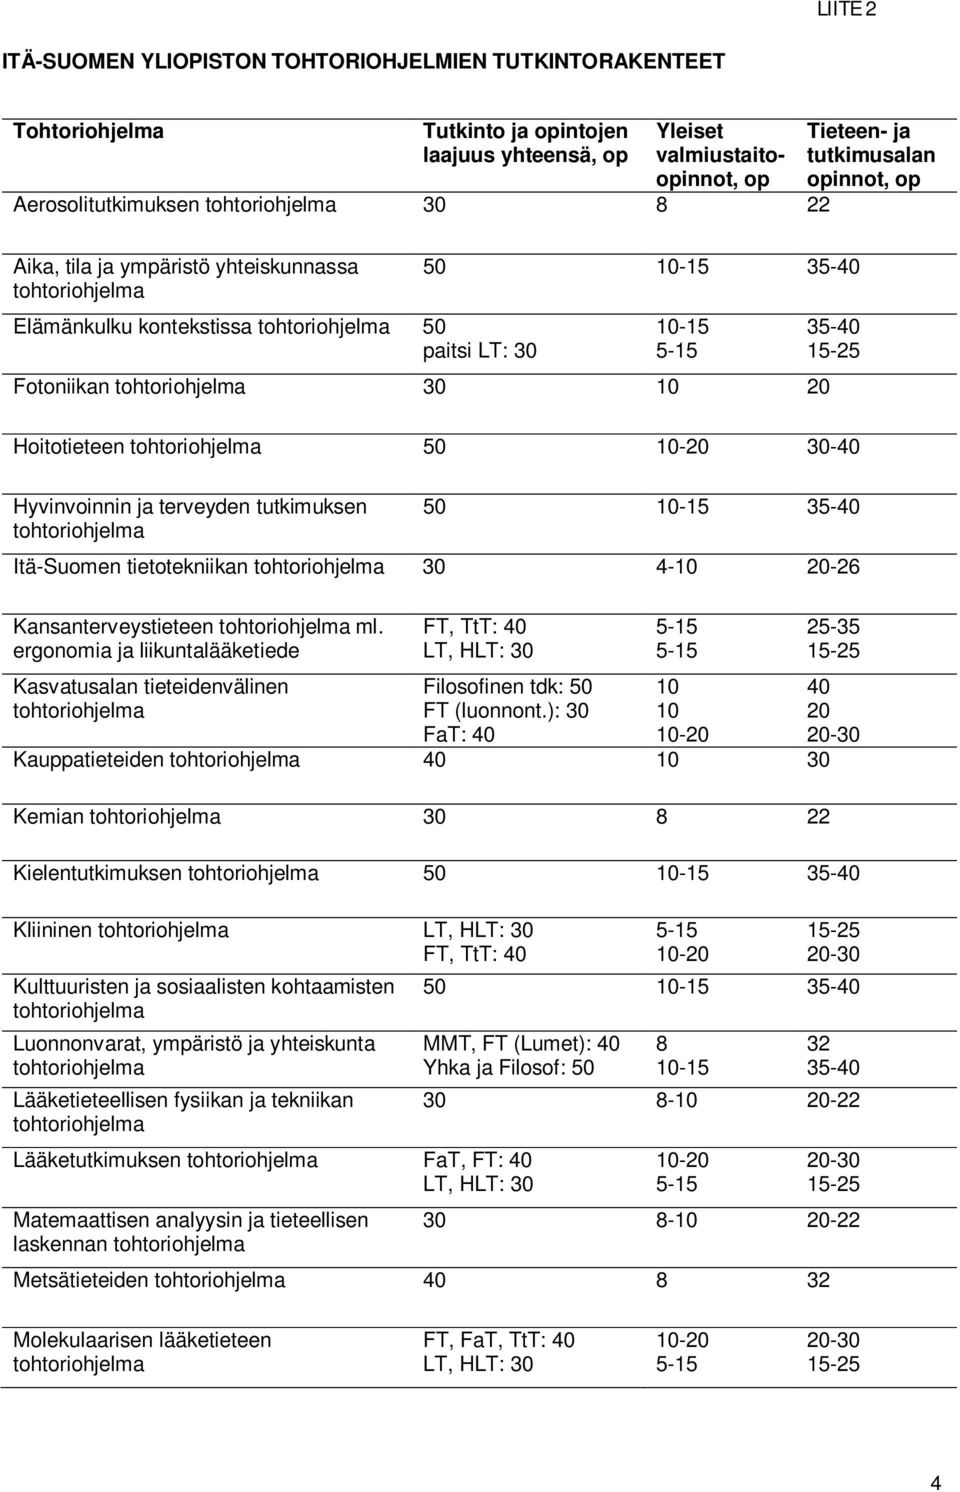 ja terveyden tutkimuksen 50 10-15 35-40 Itä-Suomen tietotekniikan 30 4-10 20-26 Kansanterveystieteen ml.